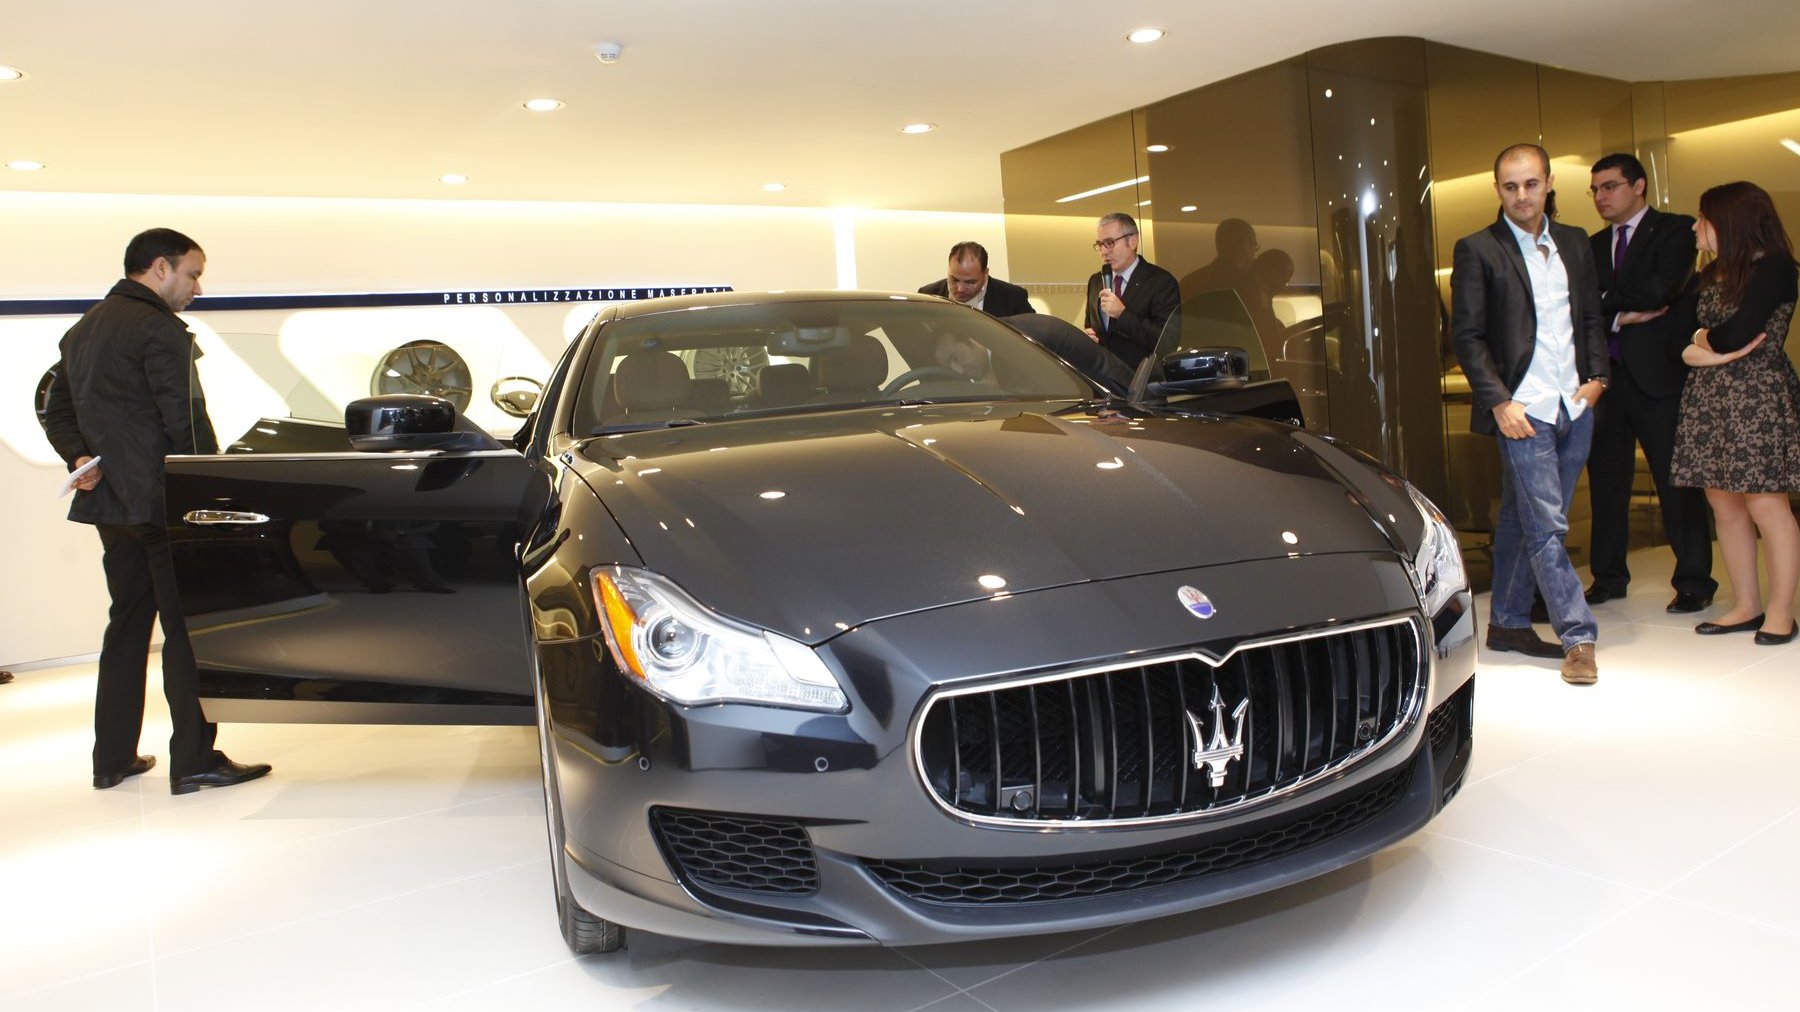 Difficile de résister à l'envie de découvrir l'intérieur d'une Maserati.
